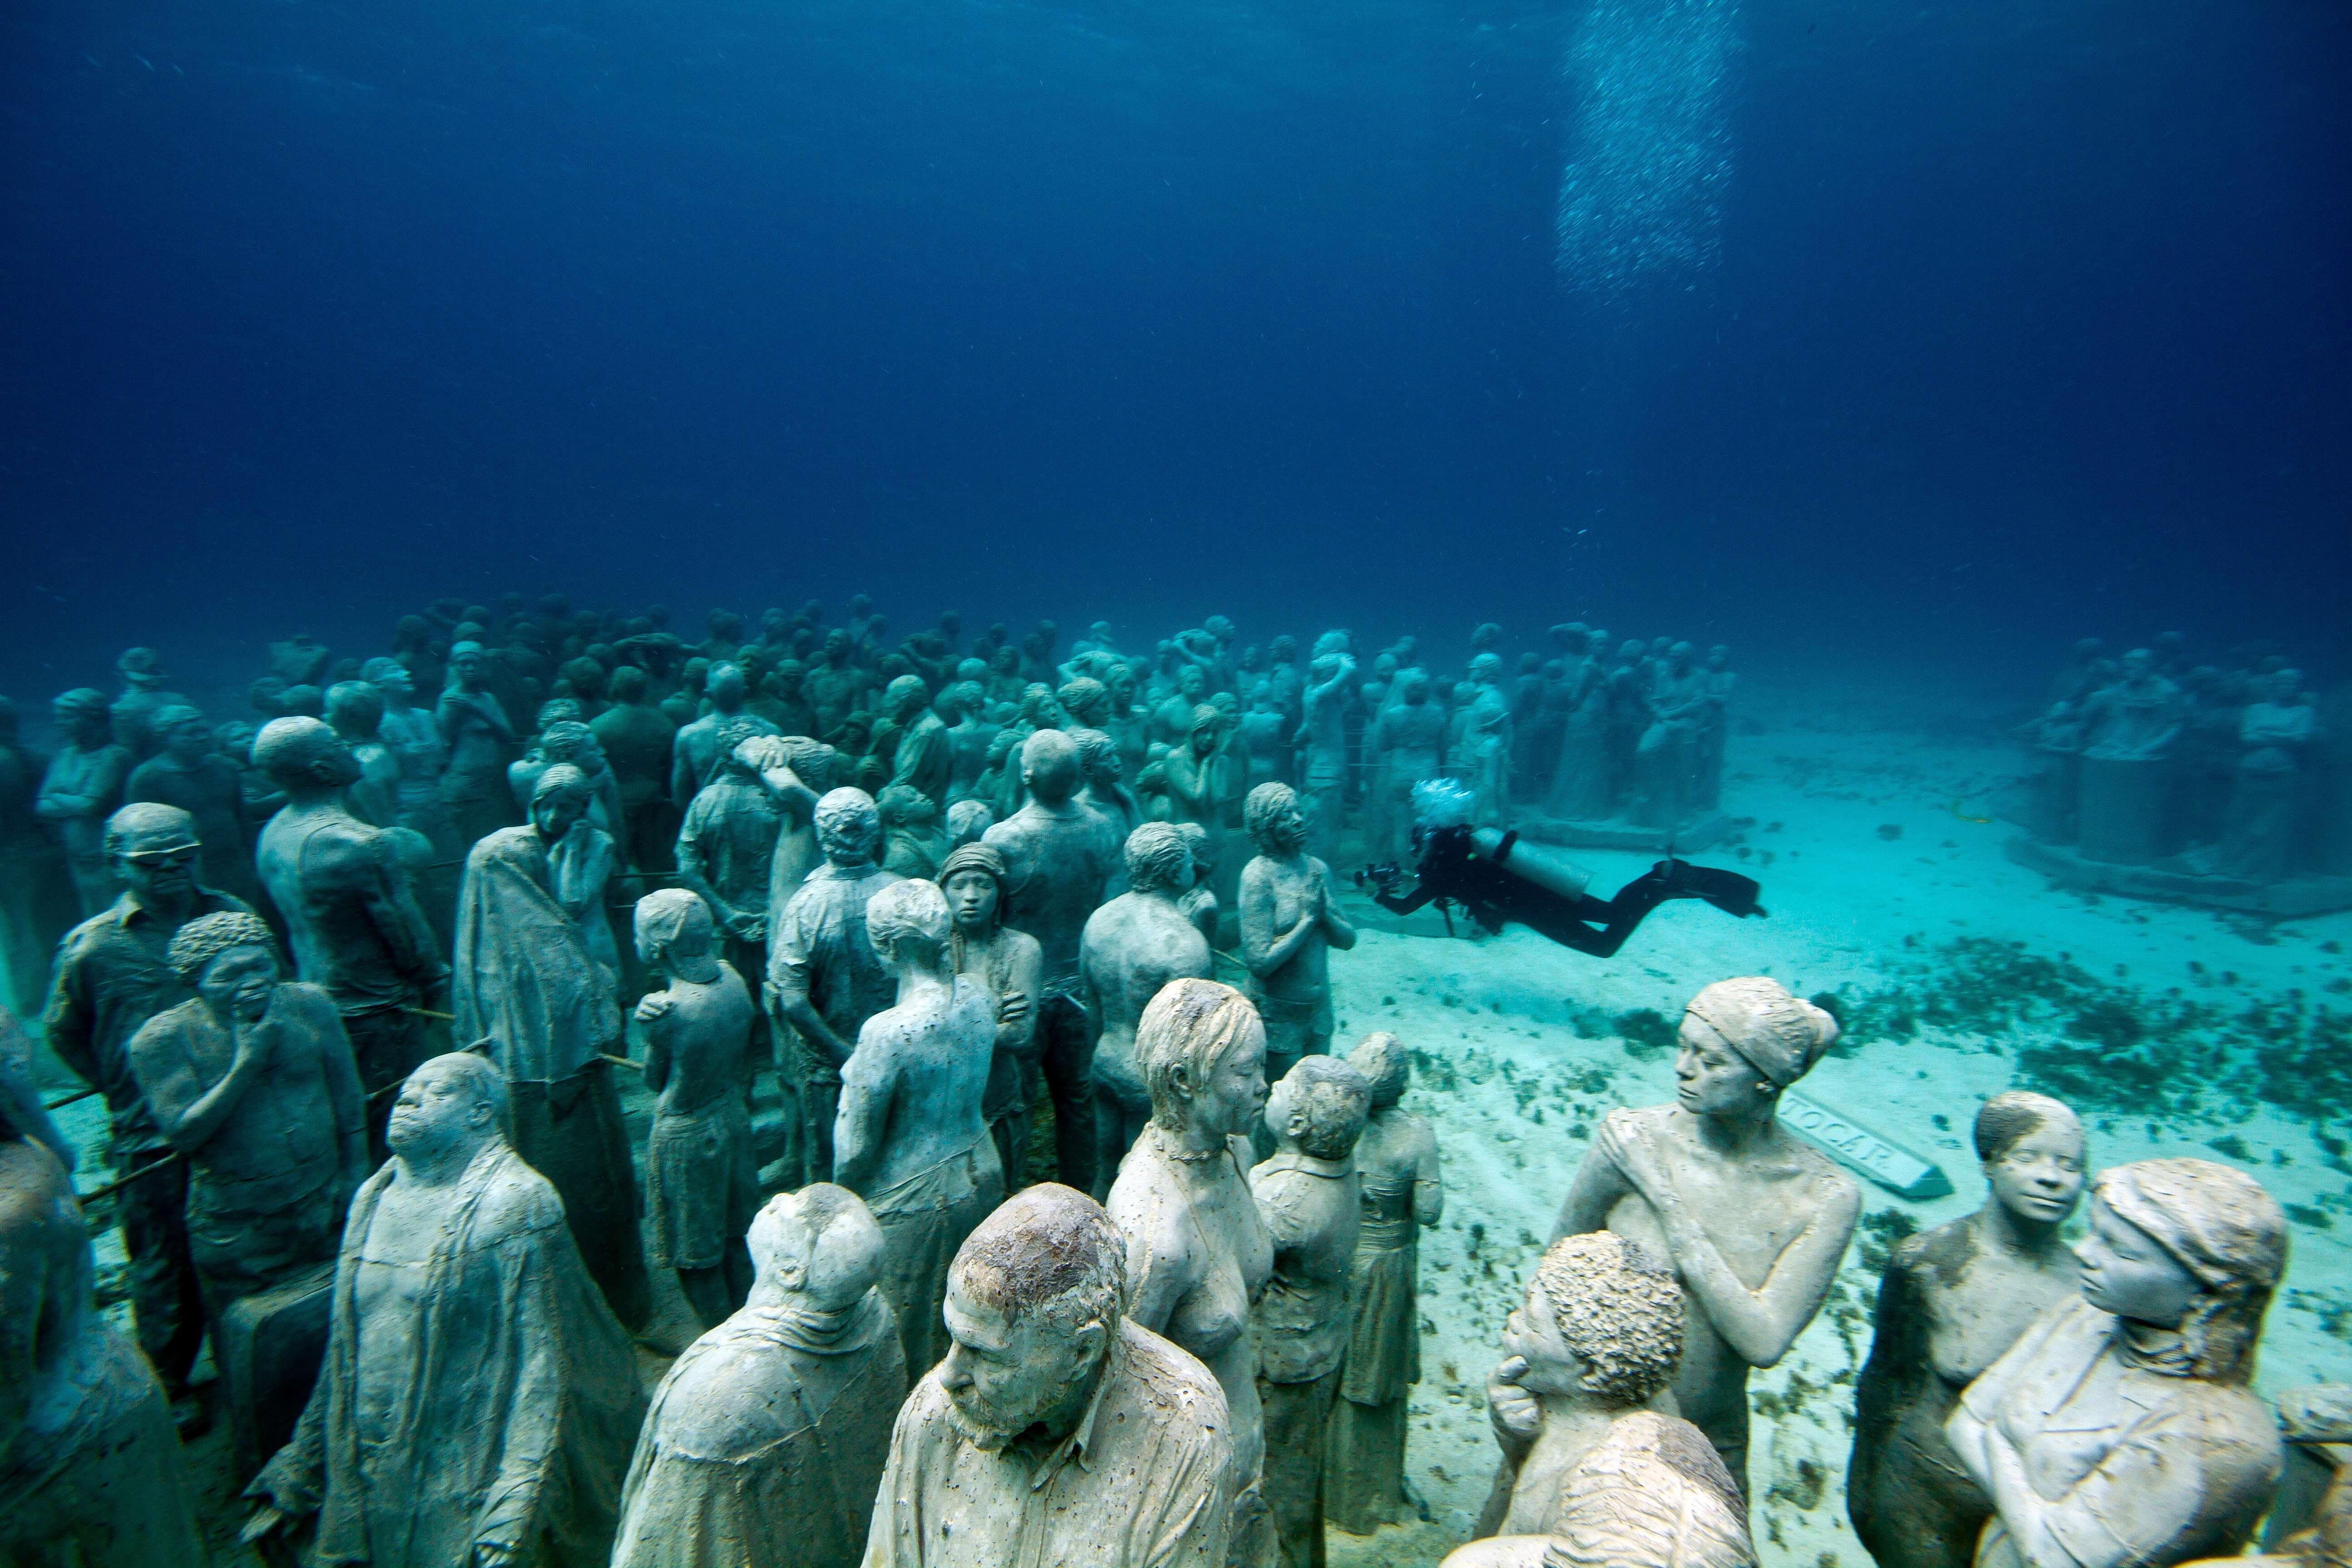 Какое сооружение стоит на дне моря. Канкун Мексика подводный музей. Канкун музей подводных скульптур. Музей подводных скульптур, Канкун, Мексика. Подводный музей скульптур в Канкуне.